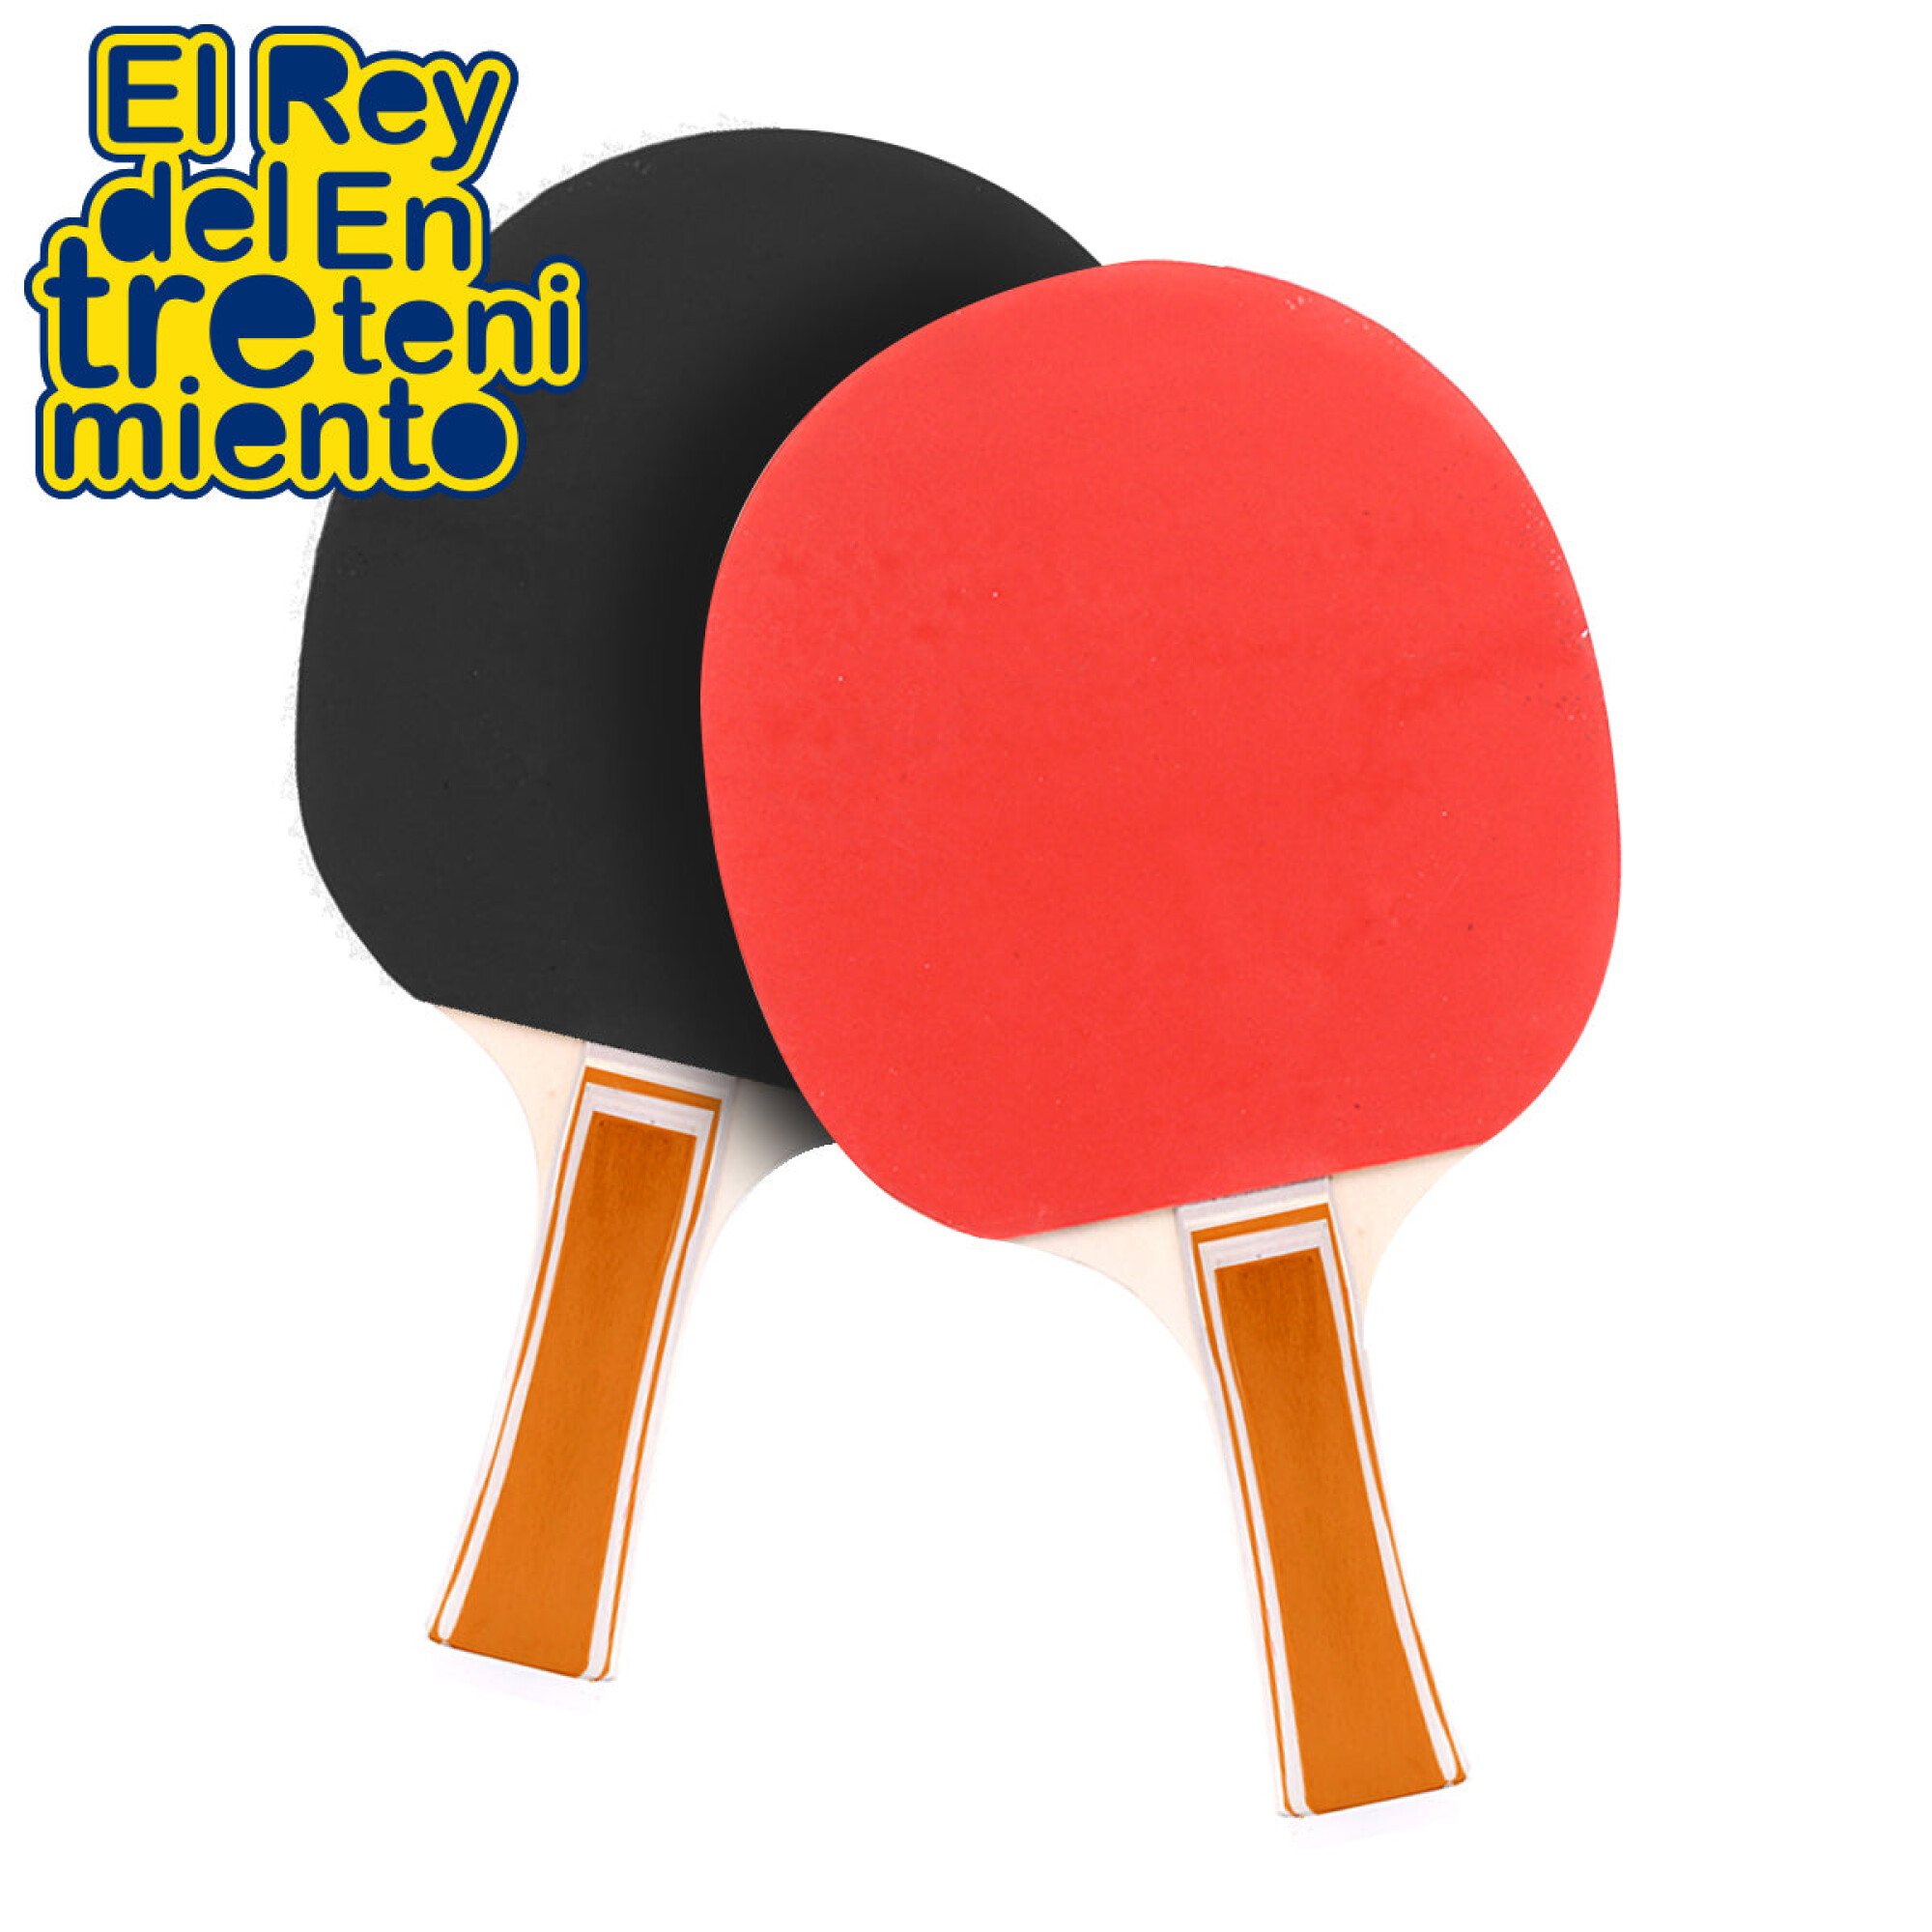 El gran dilema: mesa de ping pong de interior o de exterior - Tenis-Mesa